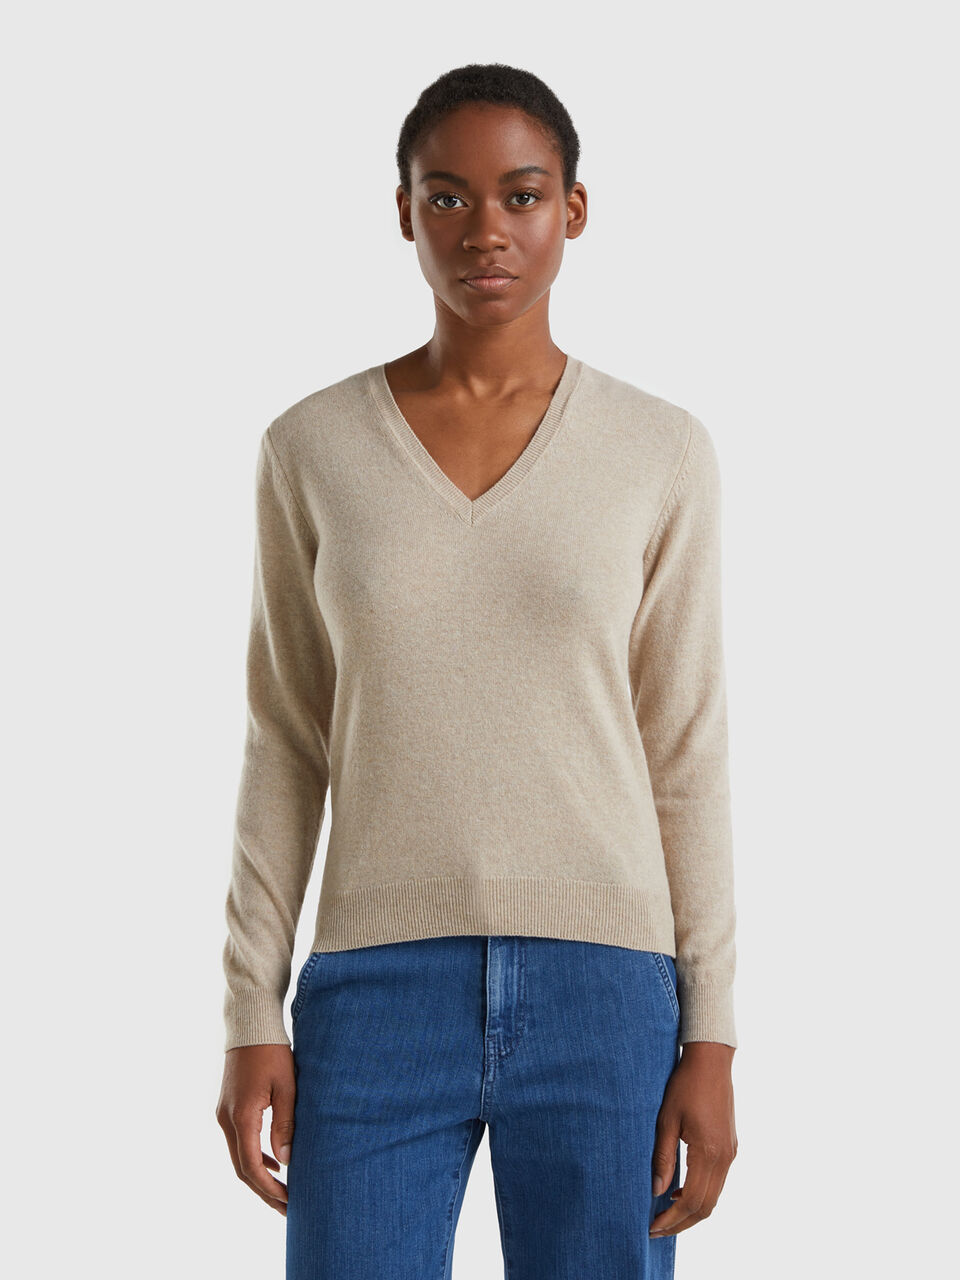 Beige V-neck sweater in Merino | Benetton wool - Beige pure